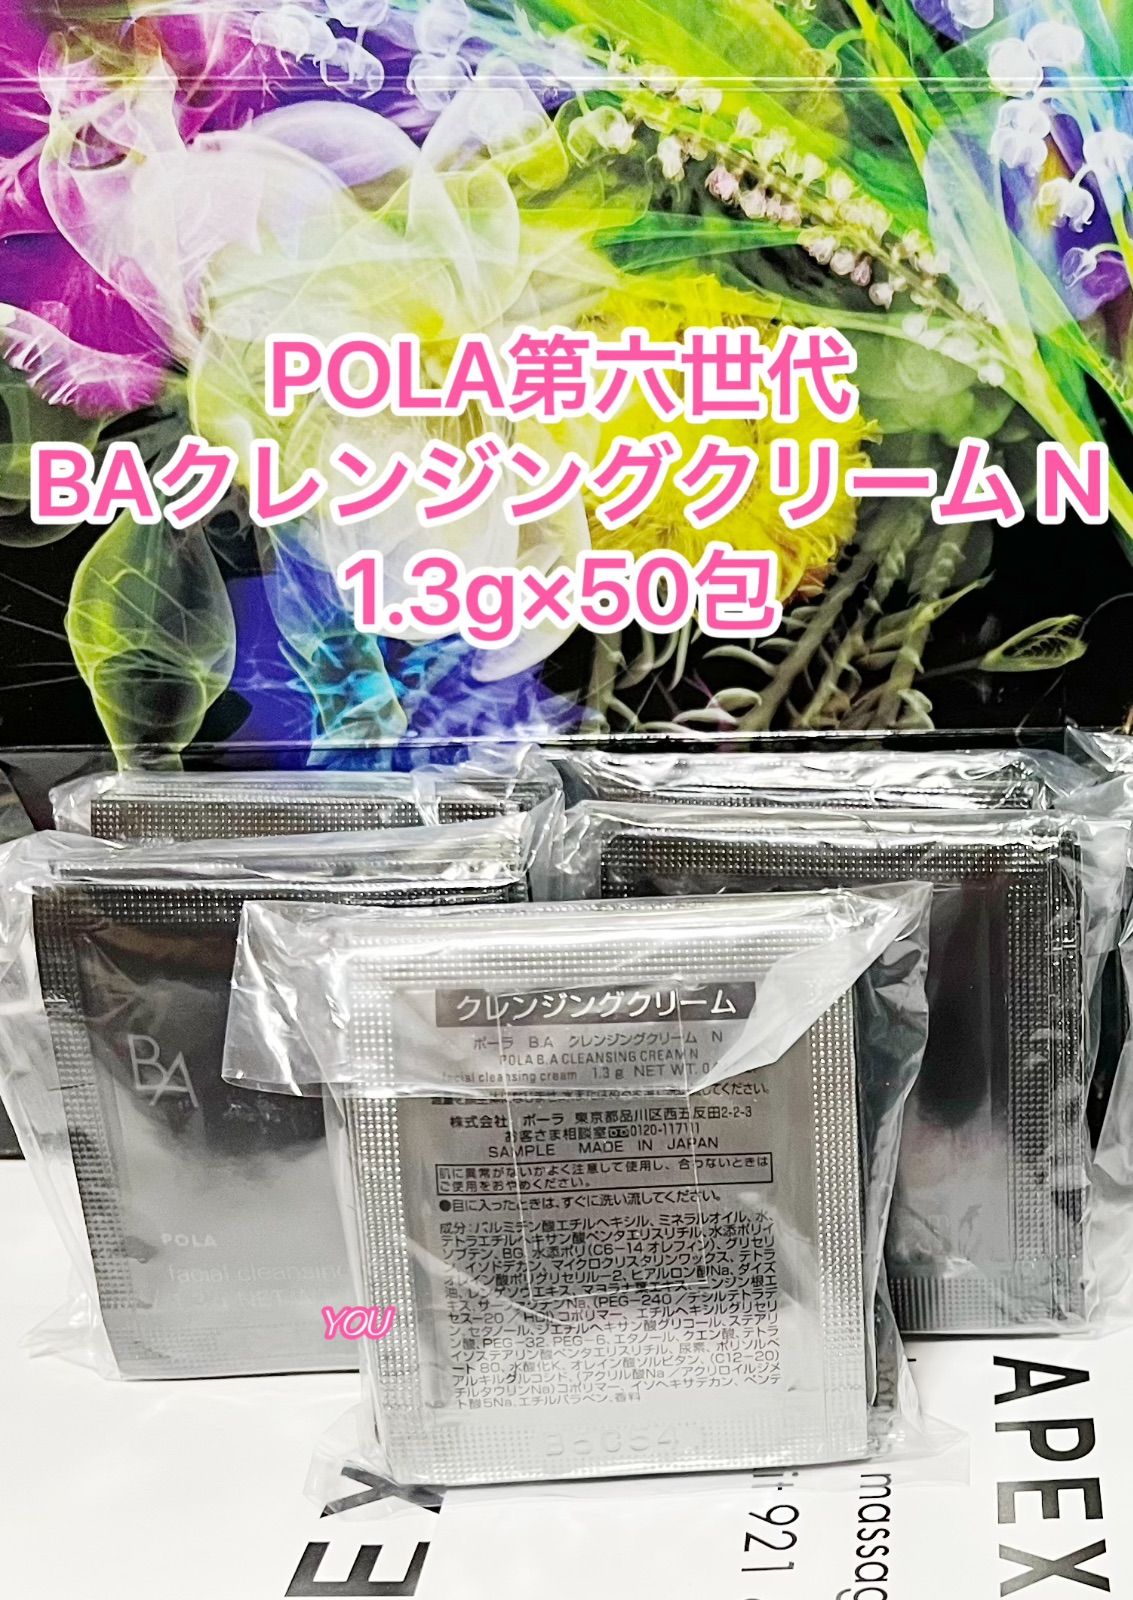 POLA BA 最新第6世代クレンジングN 1.3g×50包